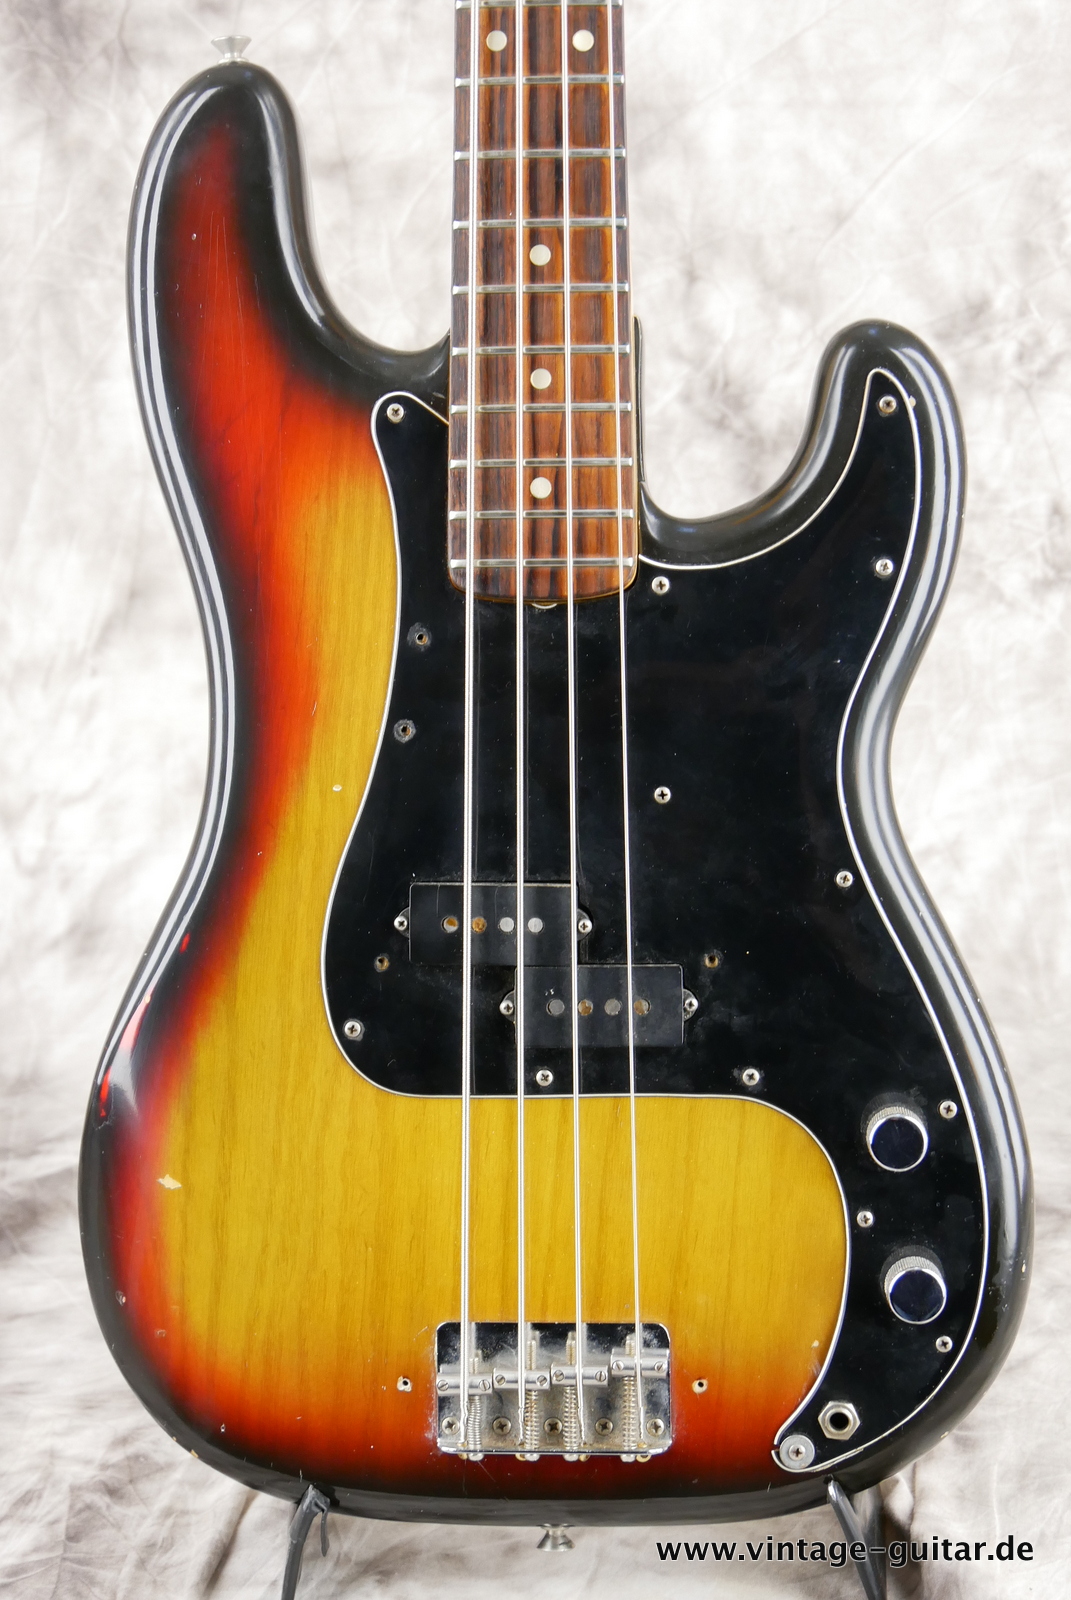 Fender_Precision_Bass_sunburst_1975-003.JPG